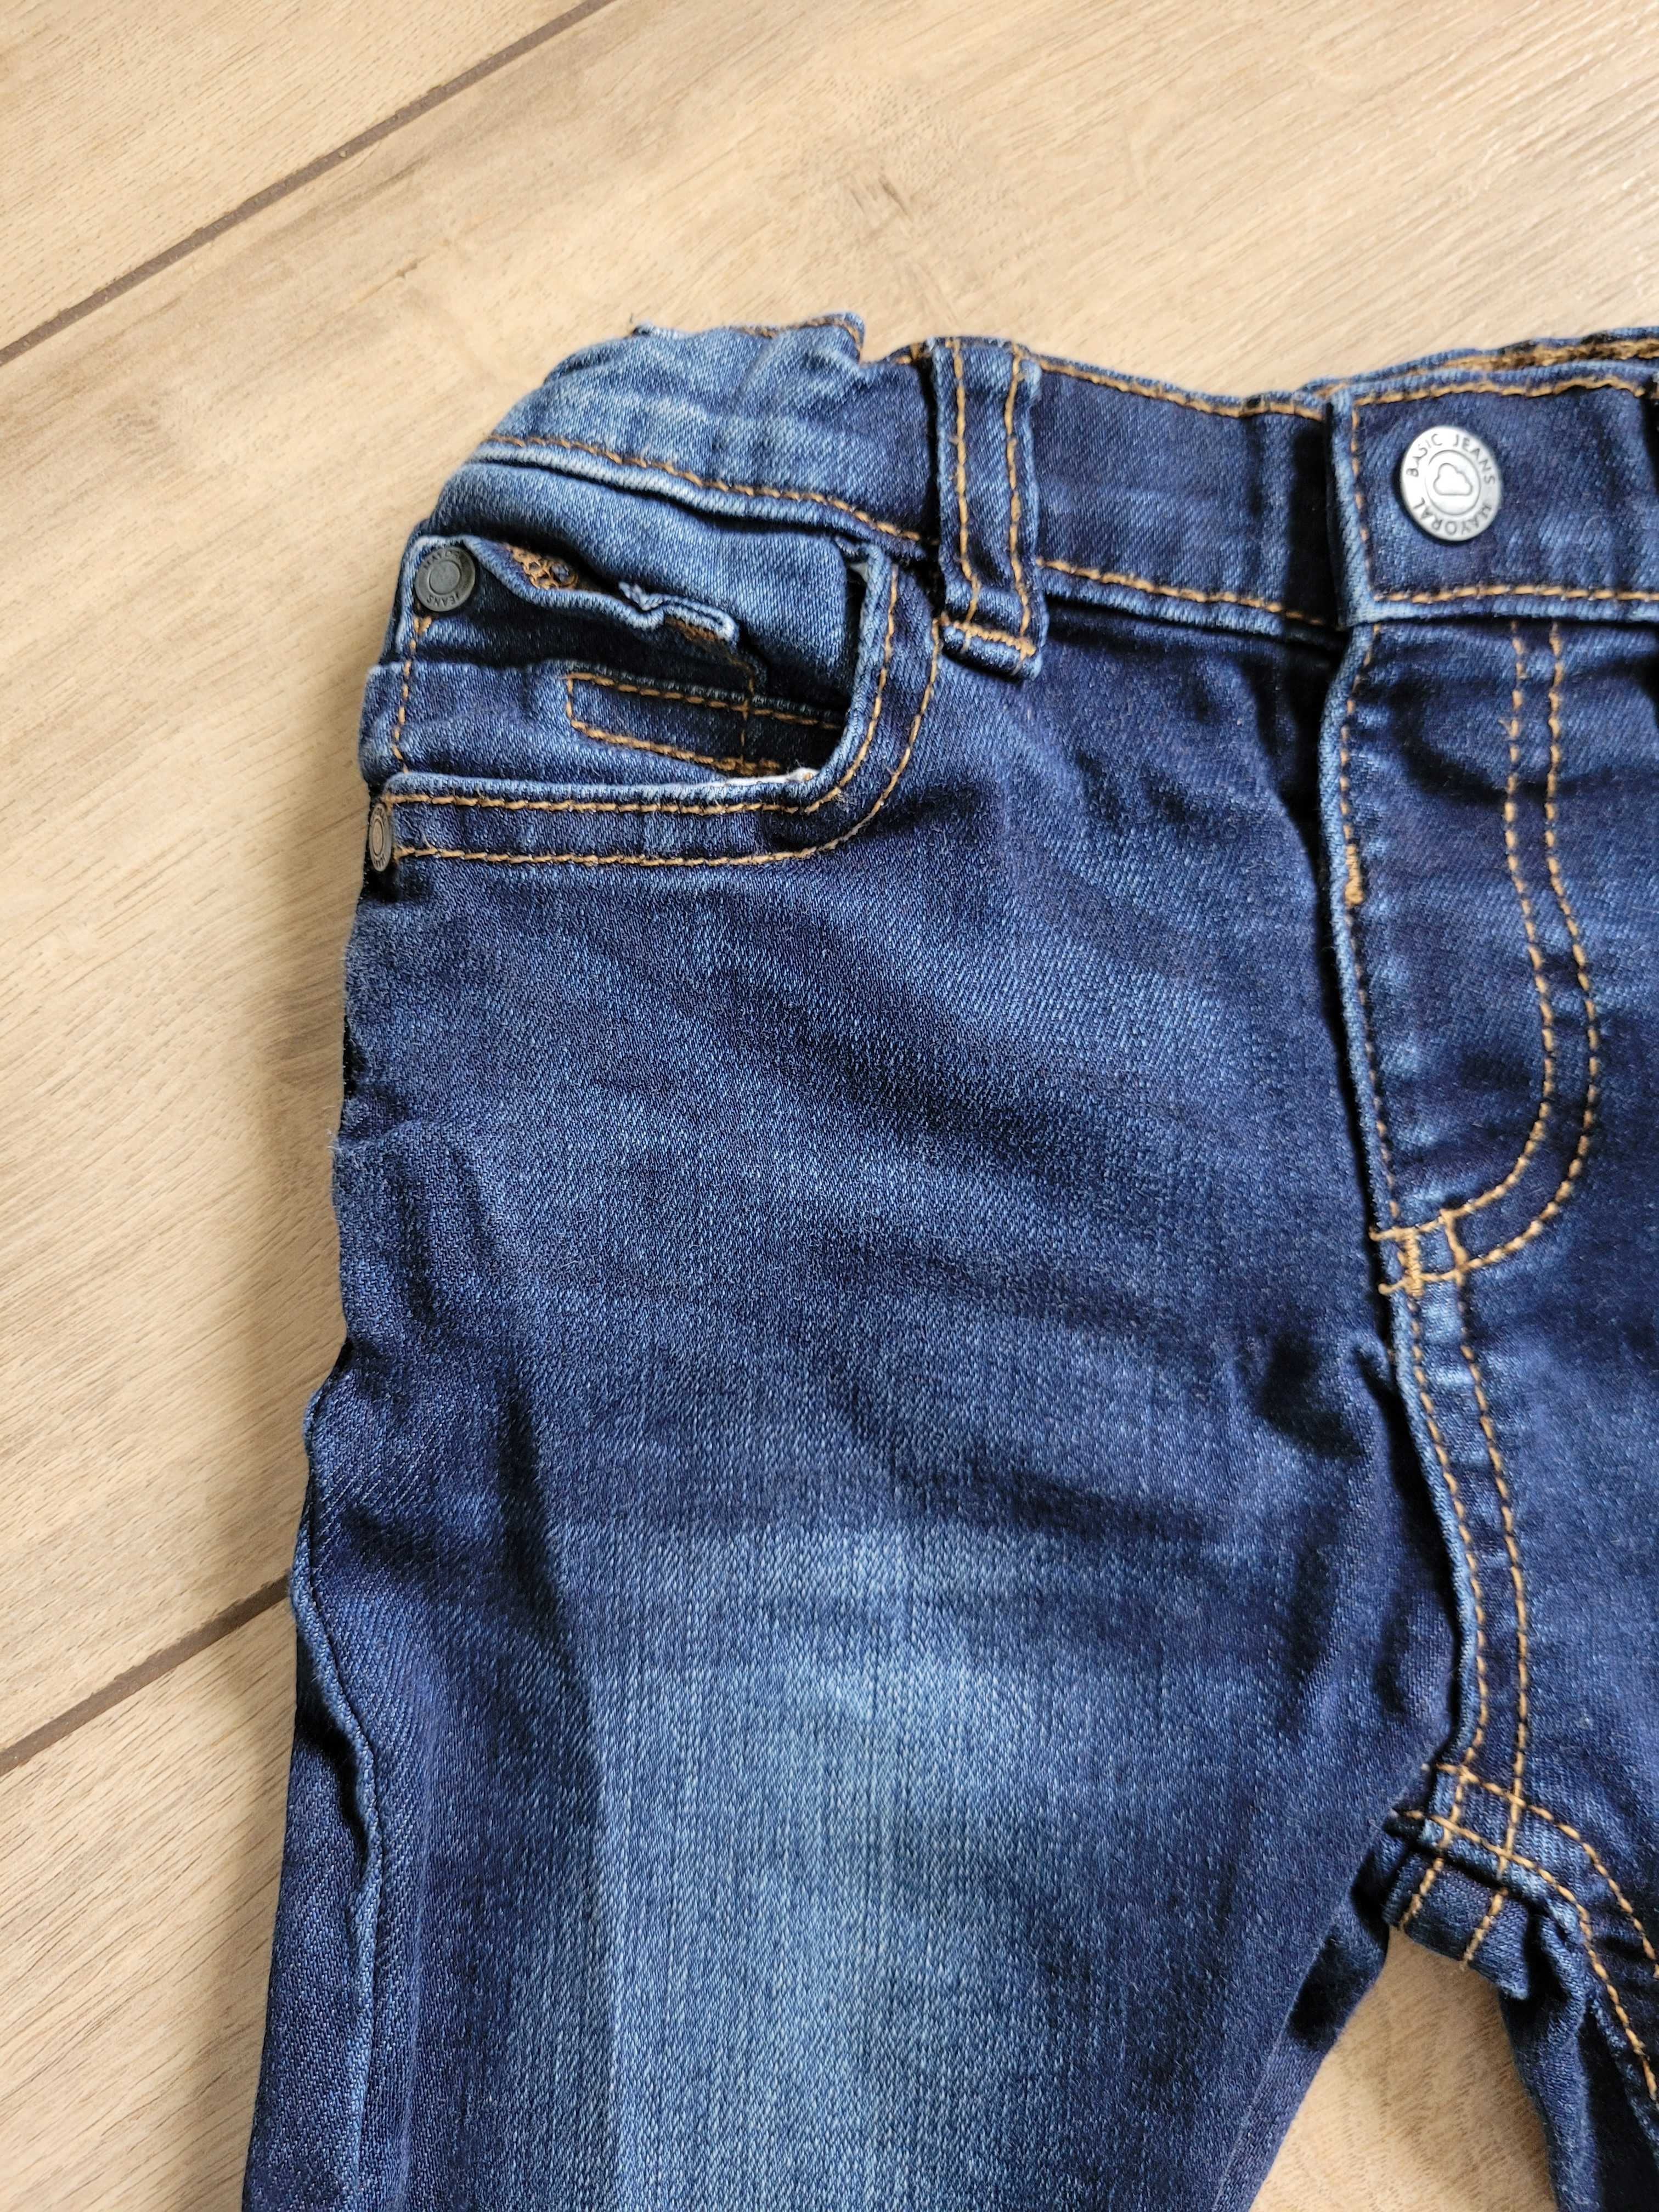 Spodnie jeansowe Mayoral 80 12m długie niemowlęce unisex